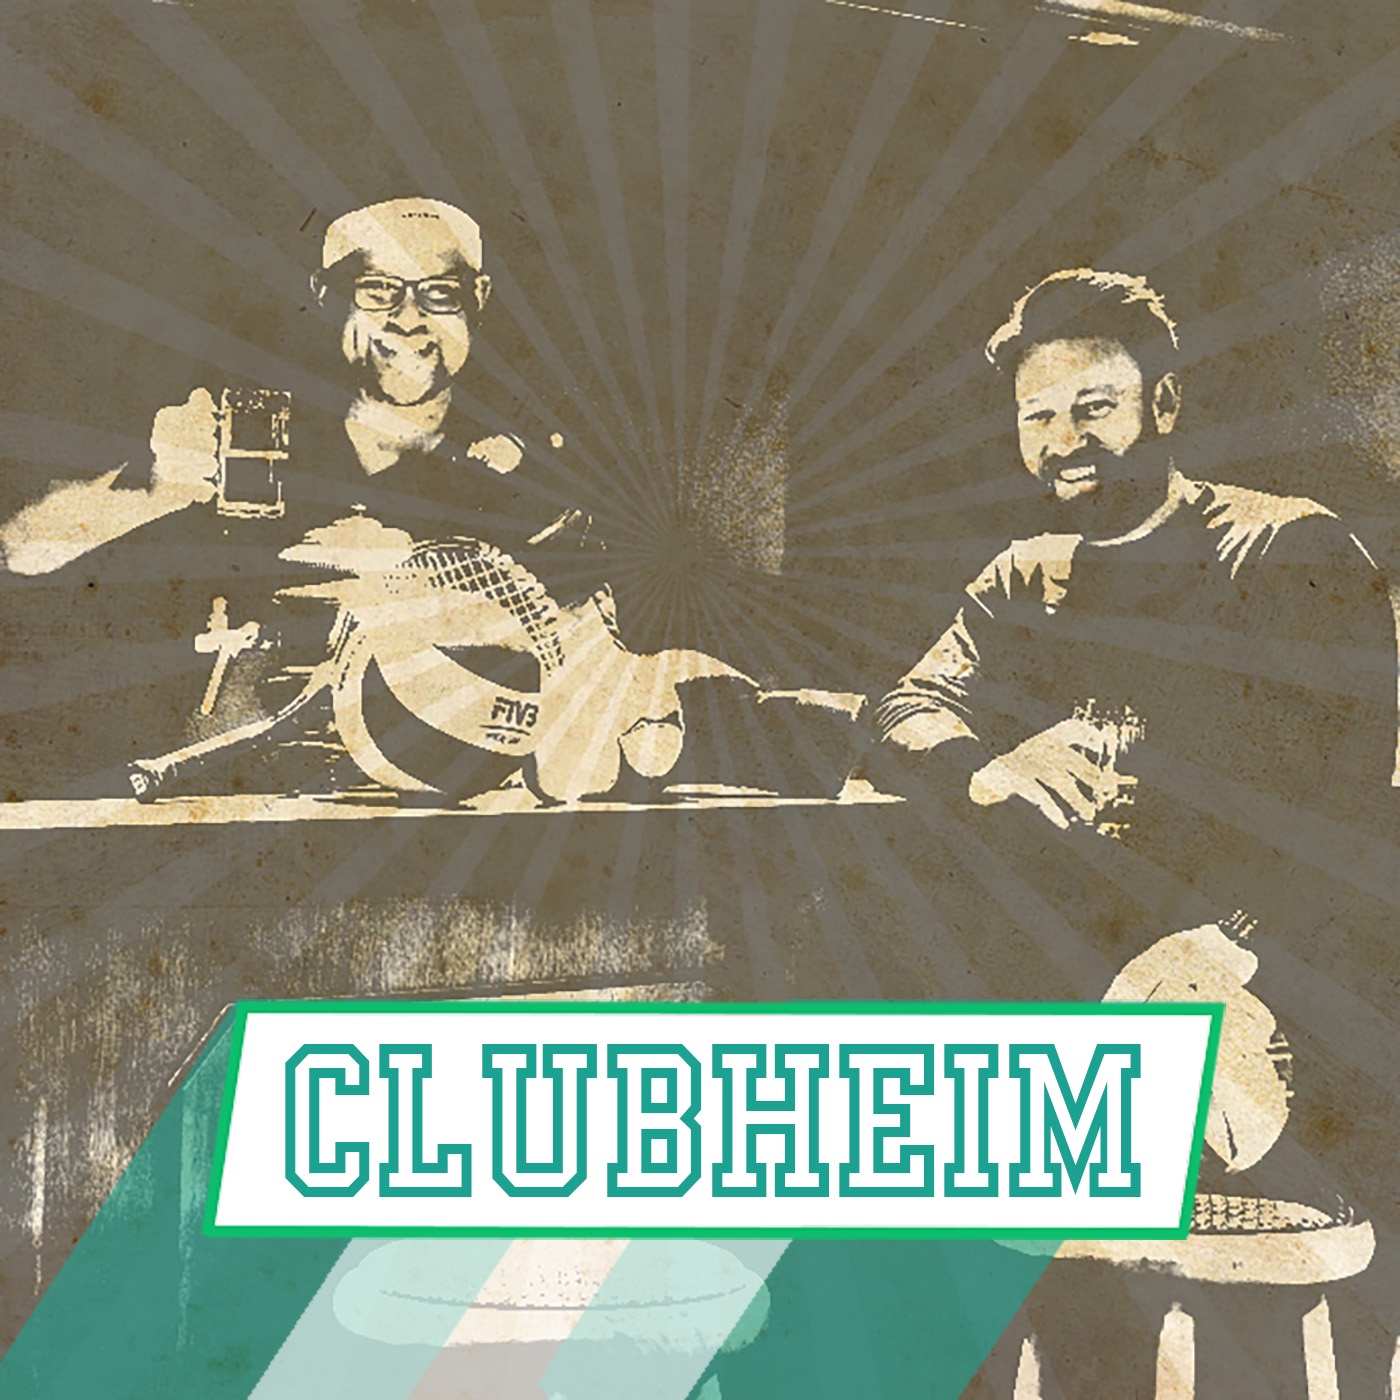 Clubheim — Bewegung auf Rezept?! — Prof. Dr. Dr. Winfried Banzer